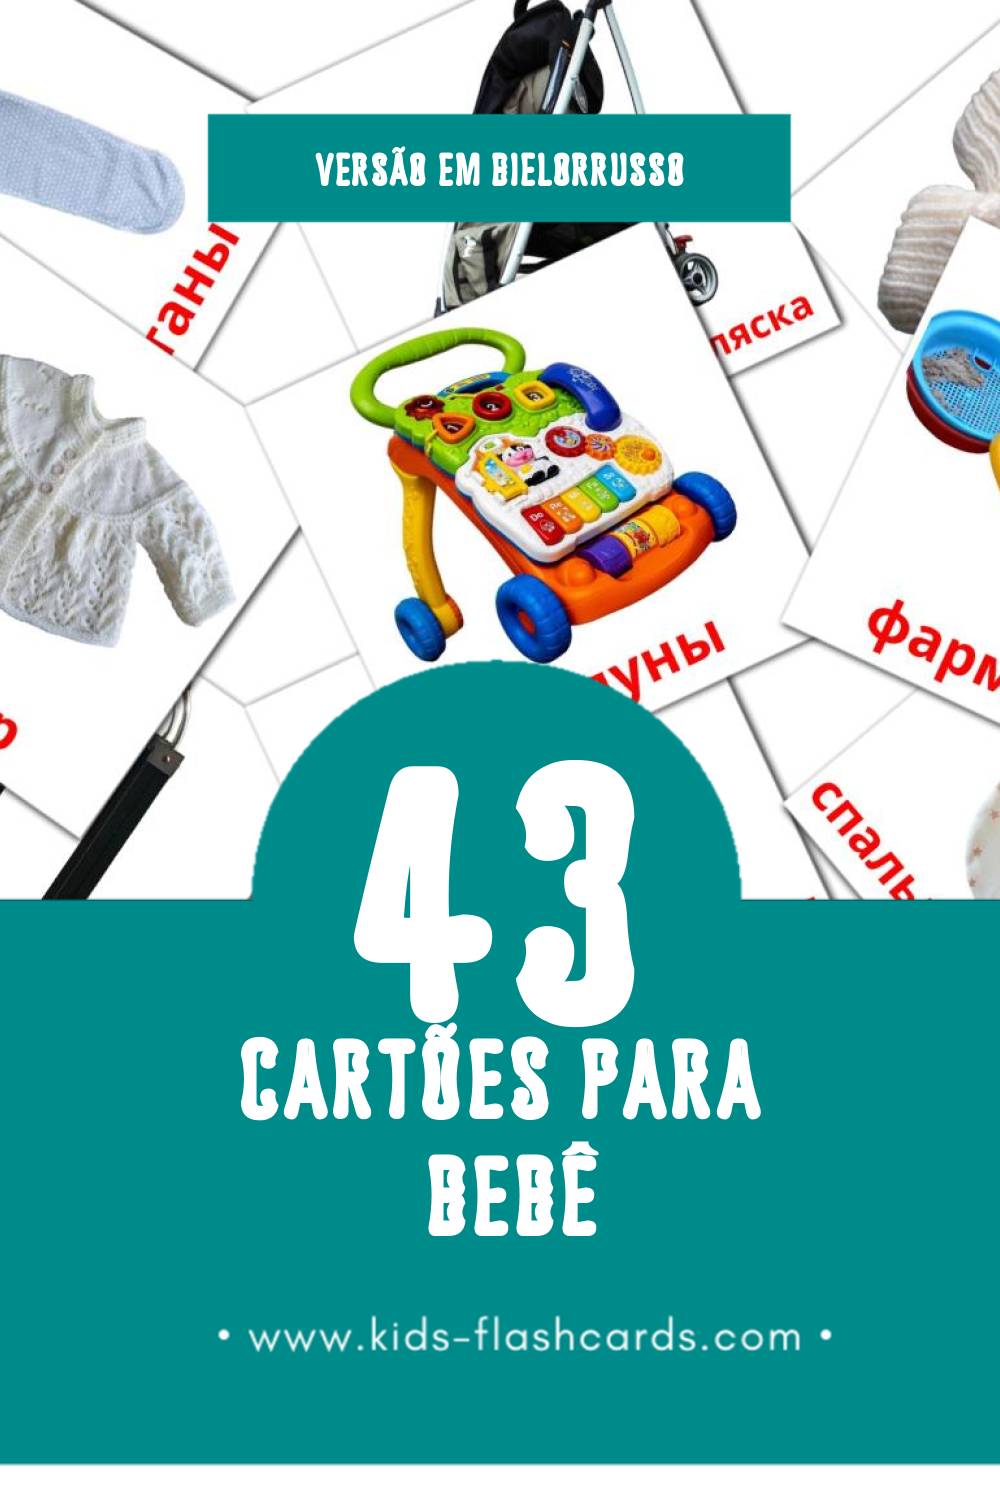 Flashcards de Дзіцятка Visuais para Toddlers (43 cartões em Bielorrusso)